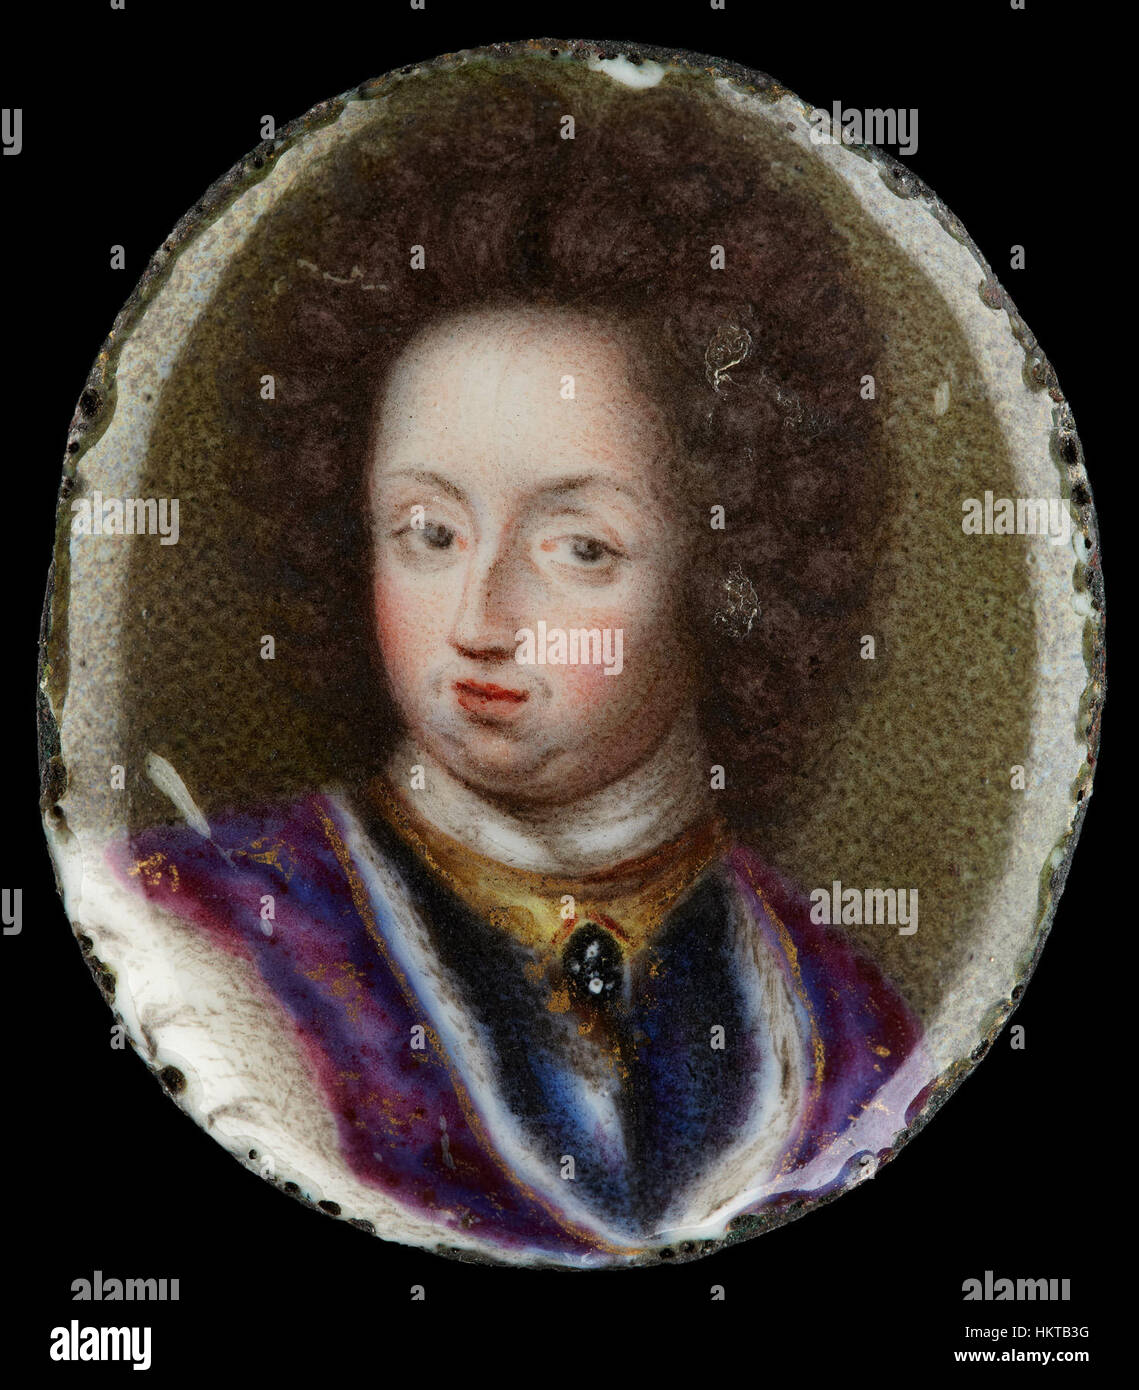 Erik Utterhielm - Miniatura retrato de Carlos XI, Rey de Suecia 1660-1697 - Proyecto de arte de Google Foto de stock